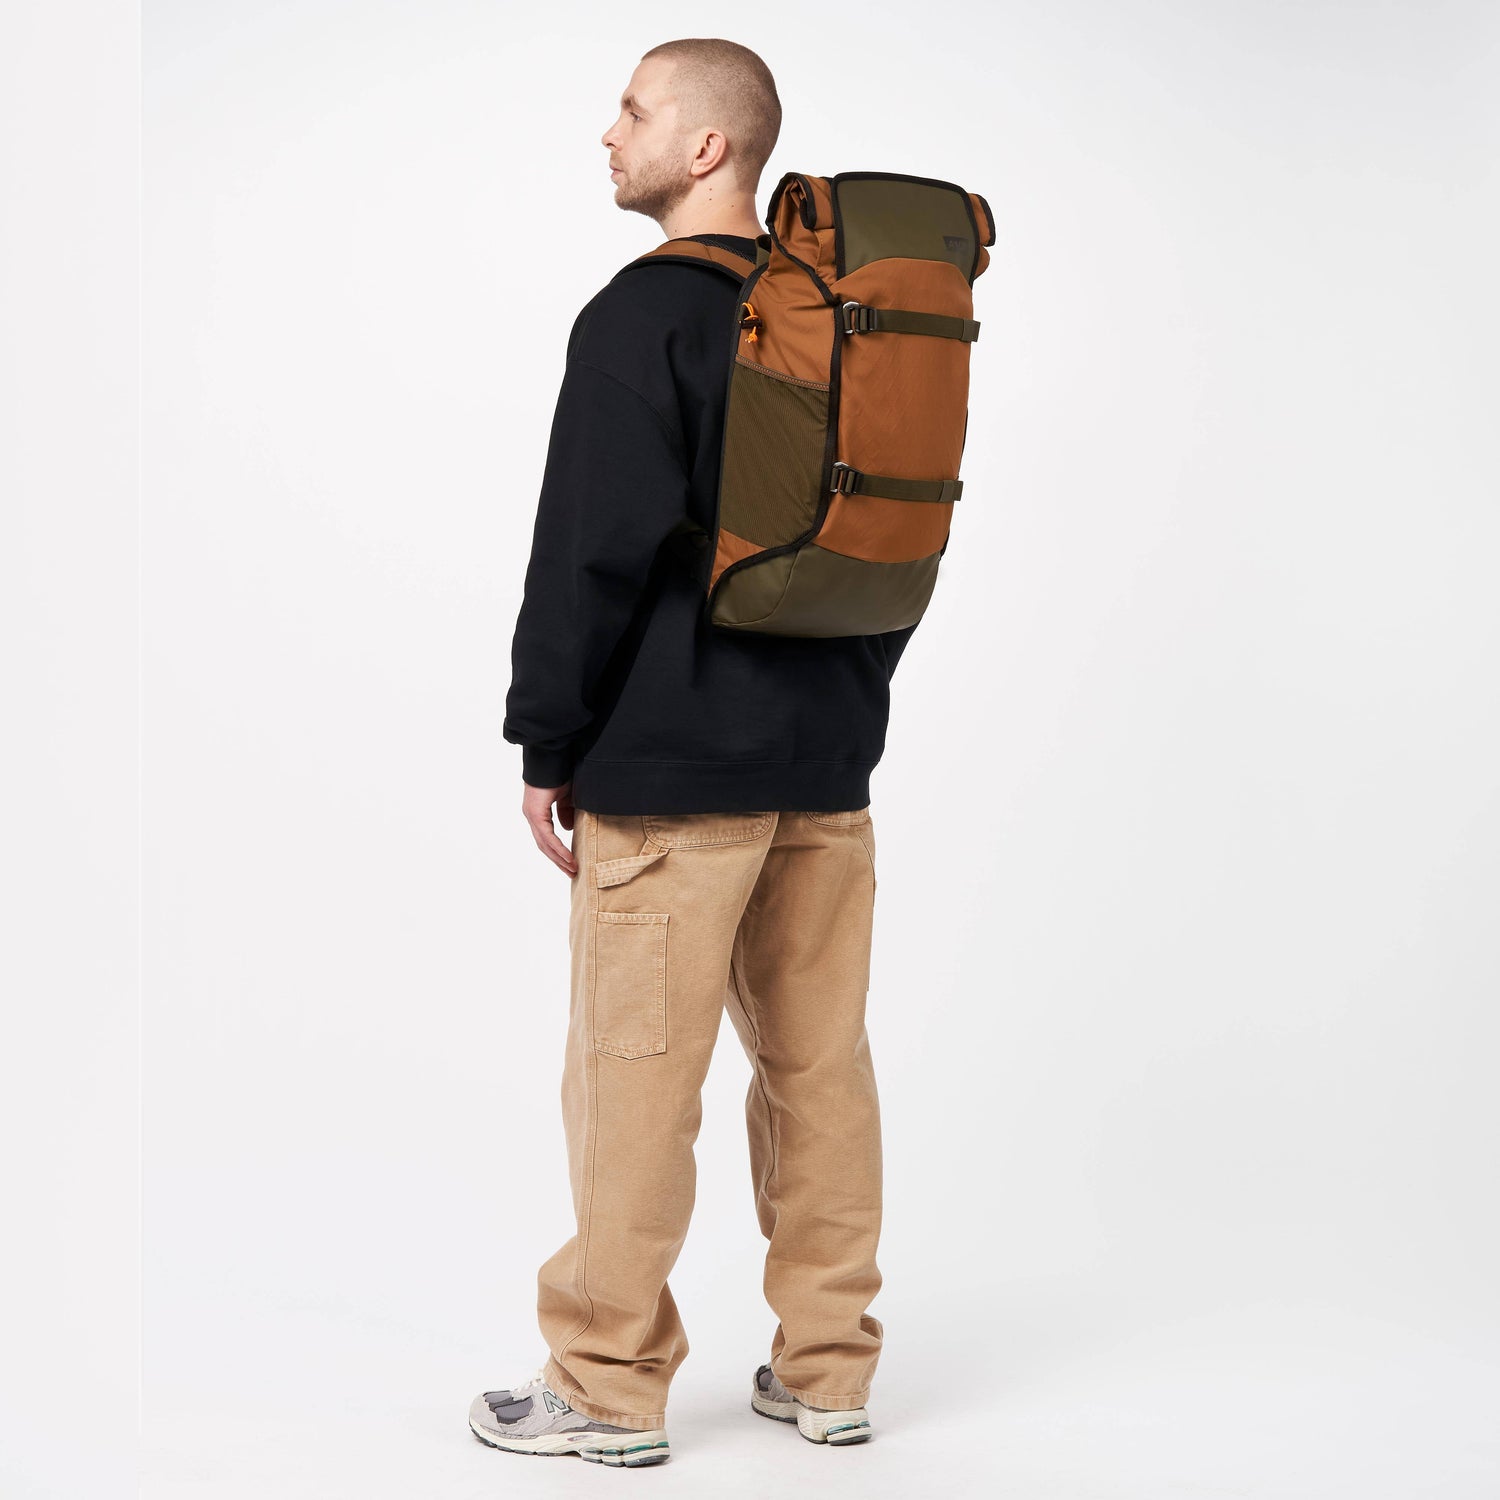 Aevor Trip Pack Backpack - Made from recycled PET-bottles Diamond Desert Bags